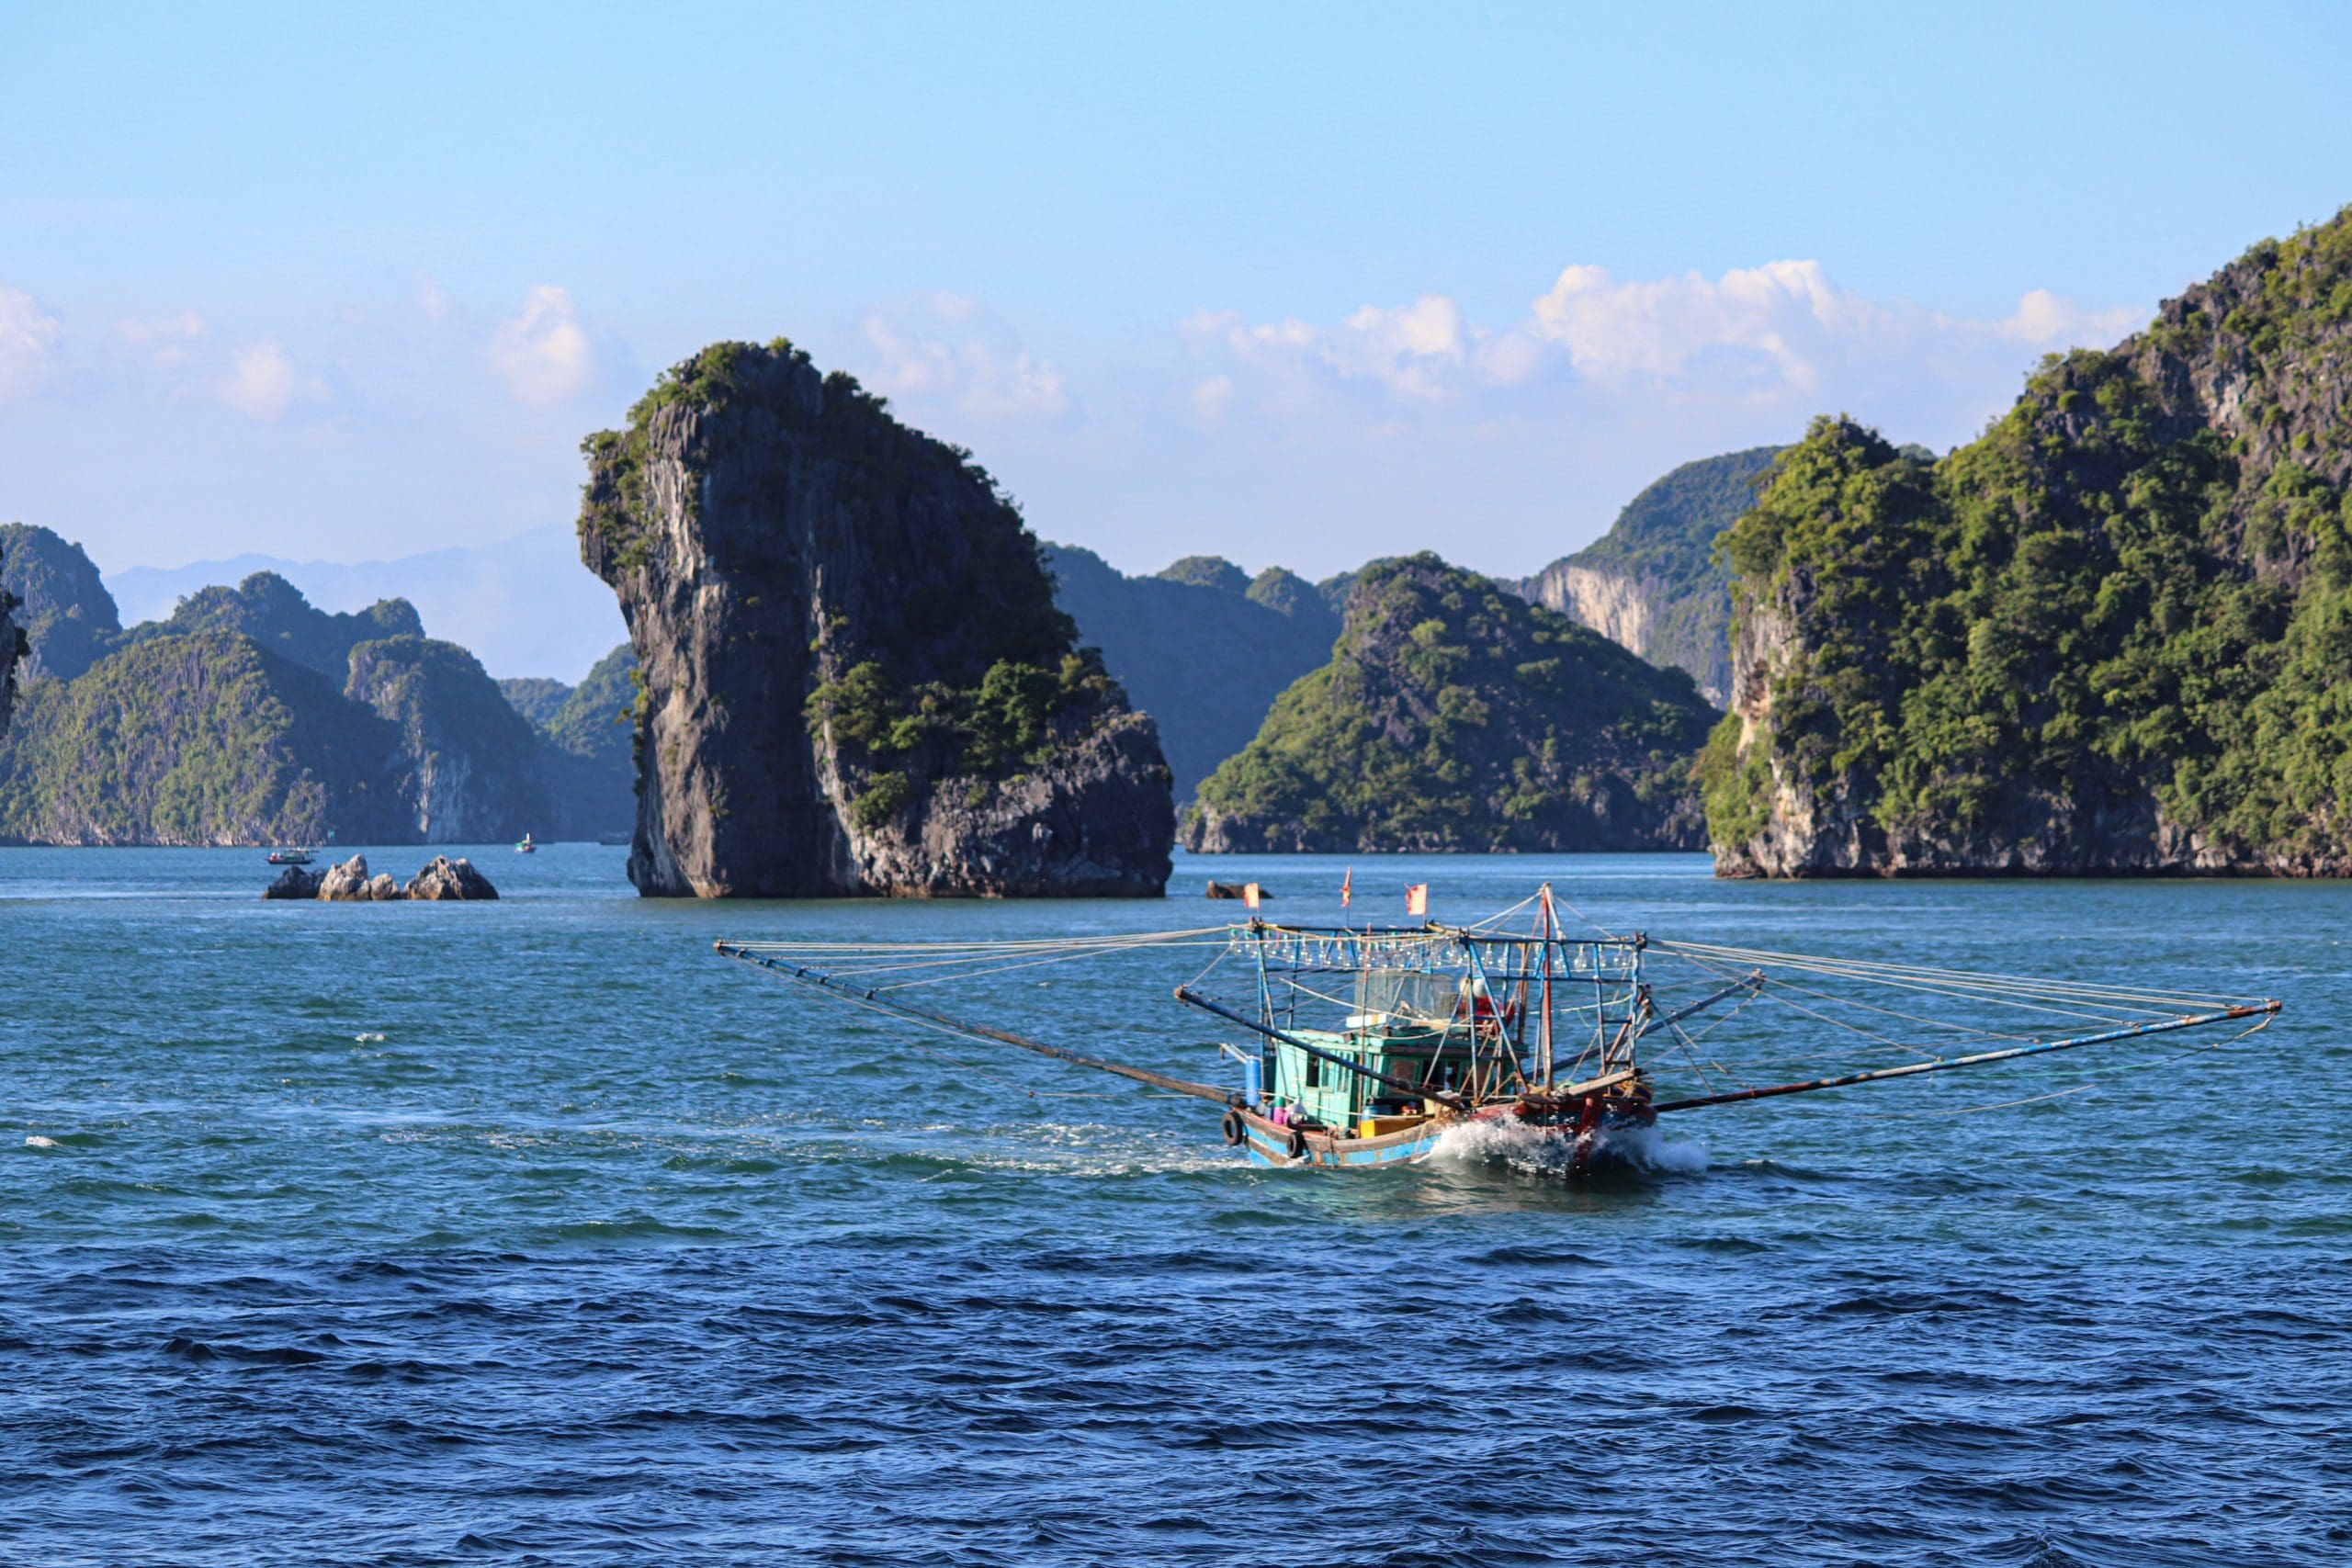 Viet Travel Tours: Embrace Vietnam’s Rich History And Culture